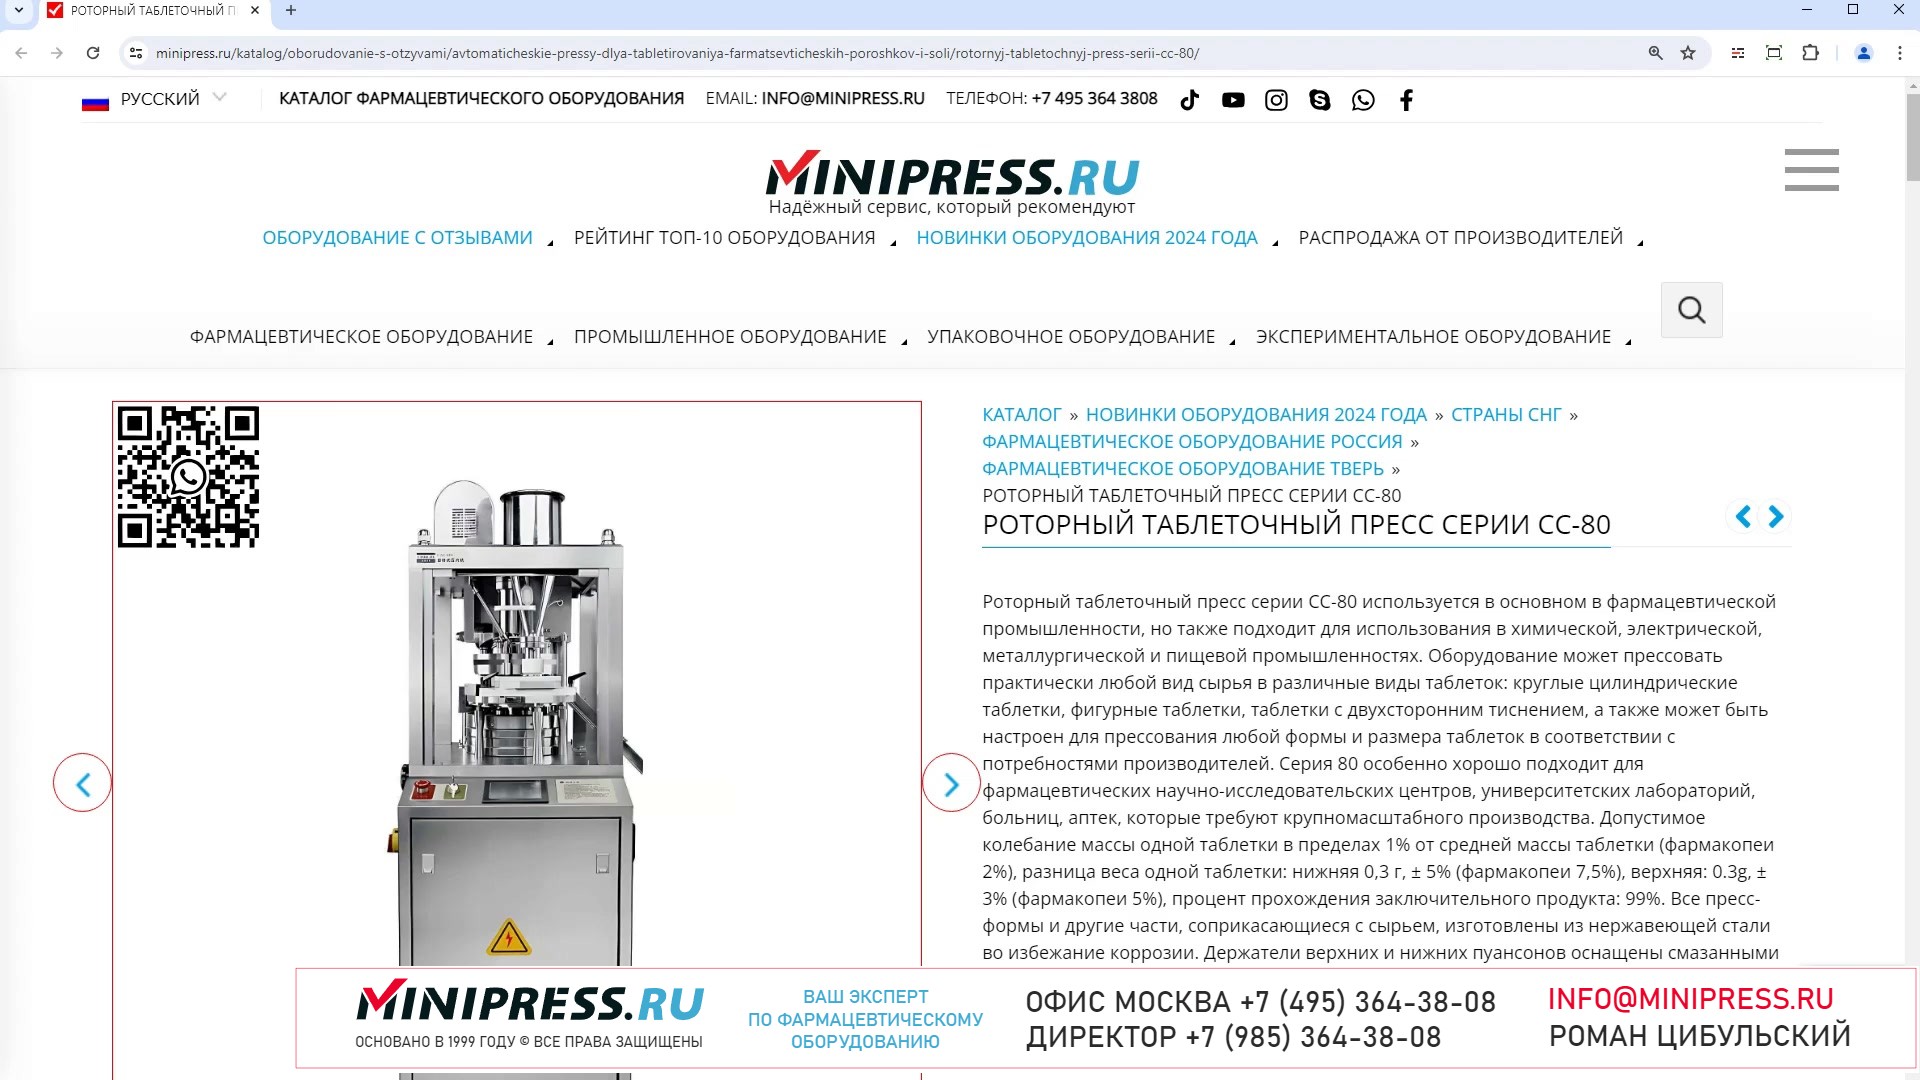 Minipress.ru Роторный таблеточный пресс серии CC-80